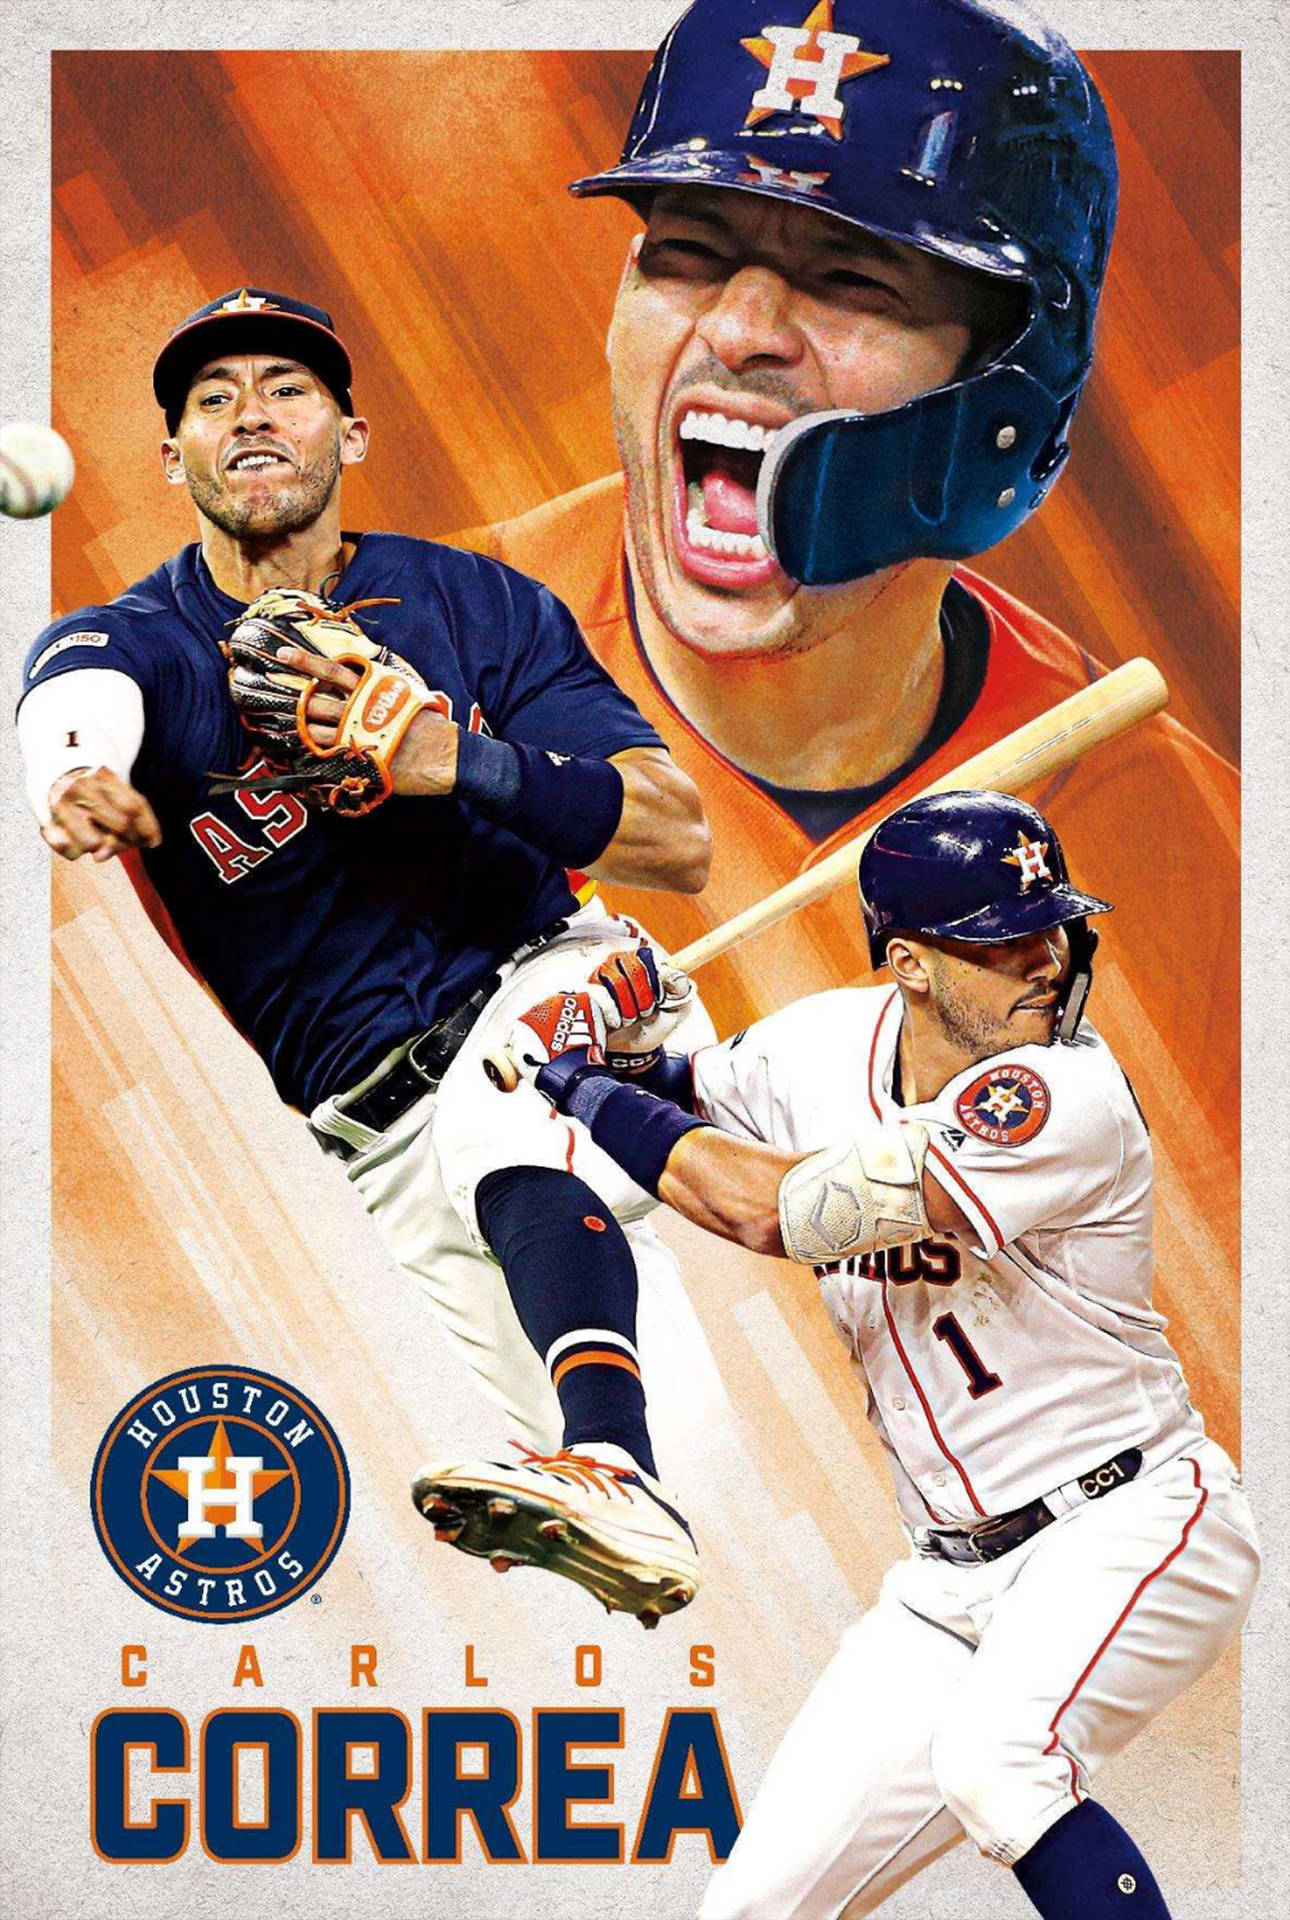 Download Carlos Correa Twins Shortstop Wallpaper